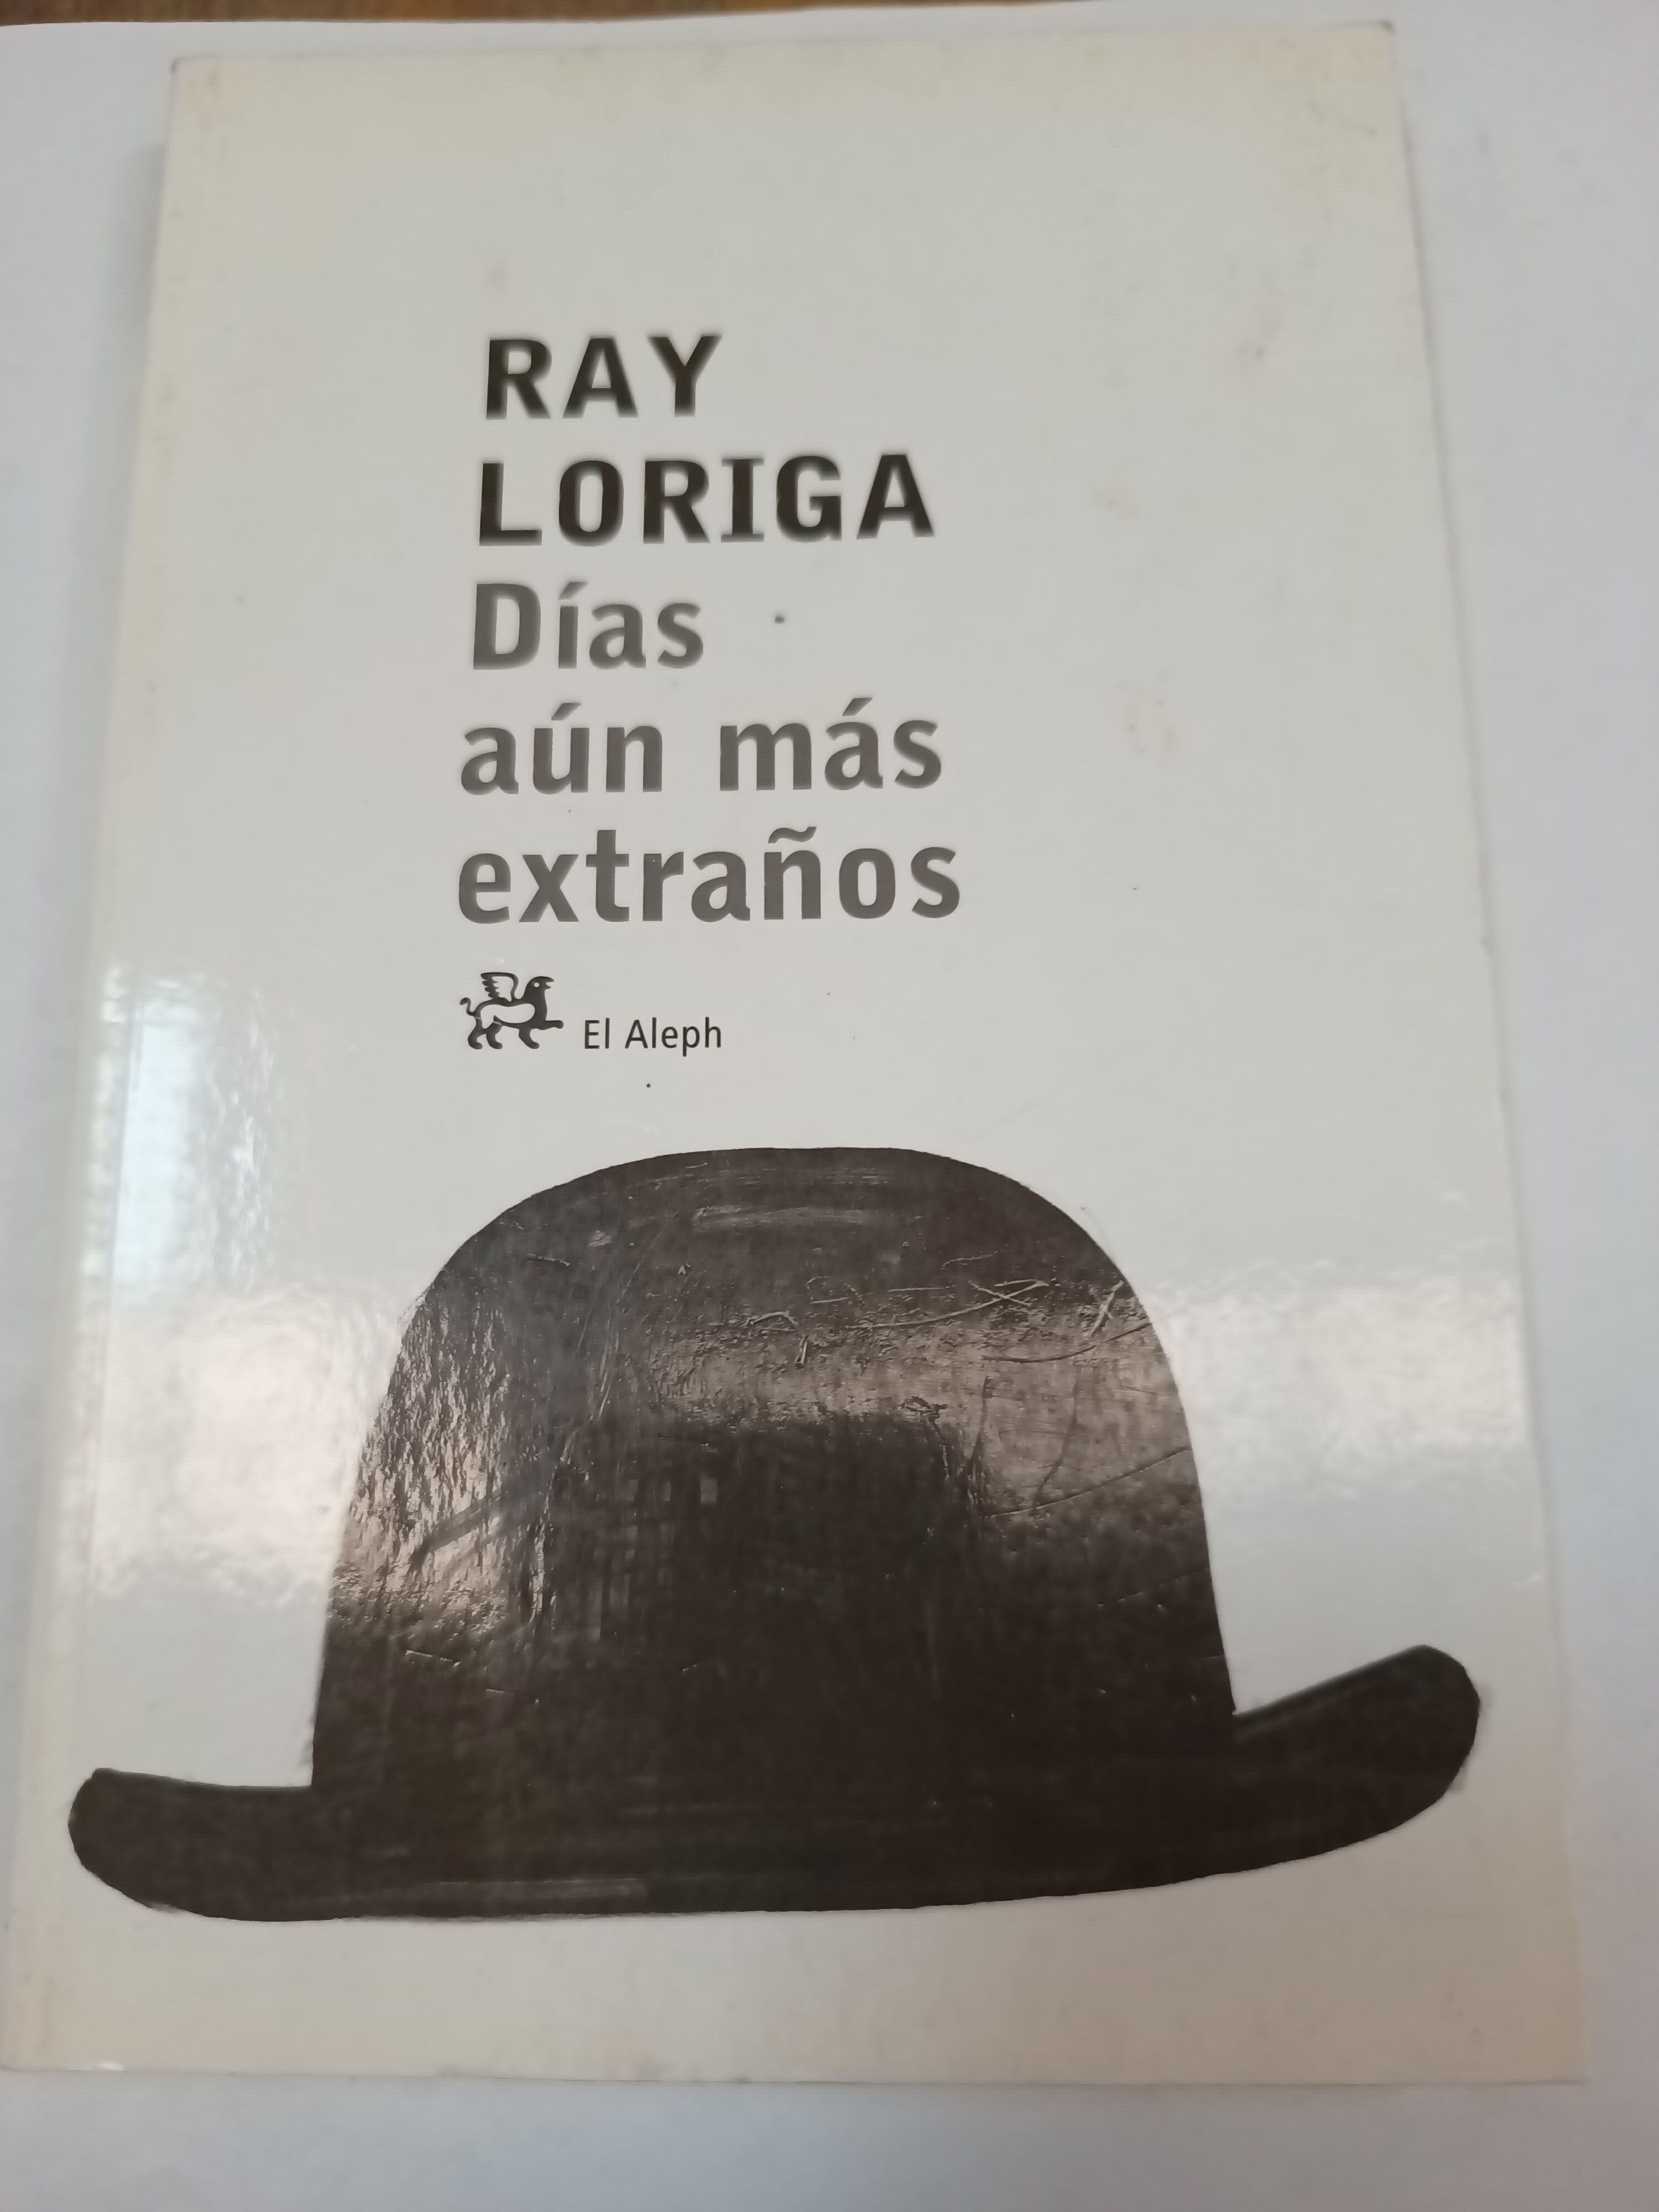 Dias aun mas extraños - Ray Loriga